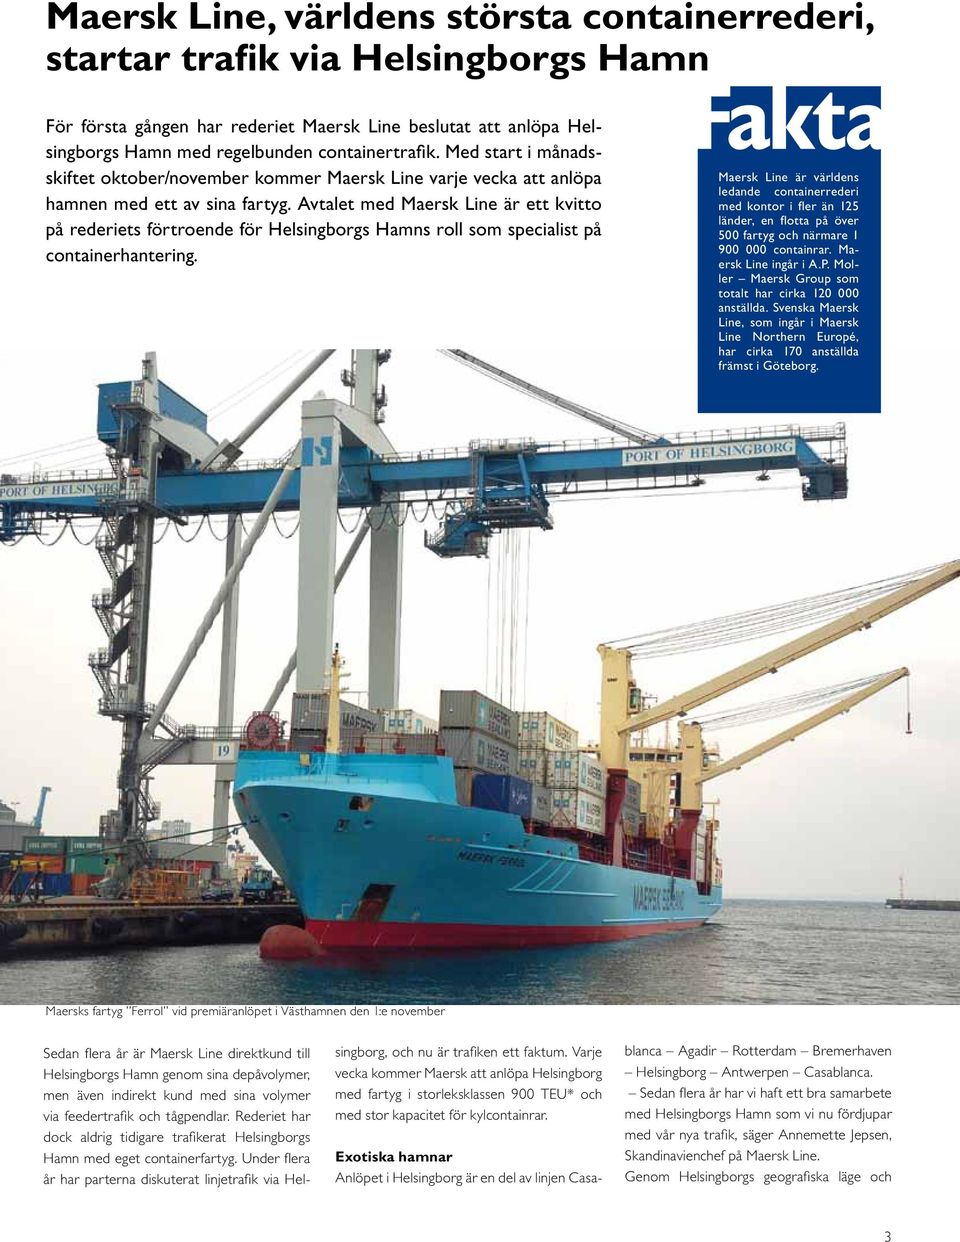 Avtalet med Maersk Line är ett kvitto på rederiets förtroende för Helsingborgs Hamns roll som specialist på containerhantering.